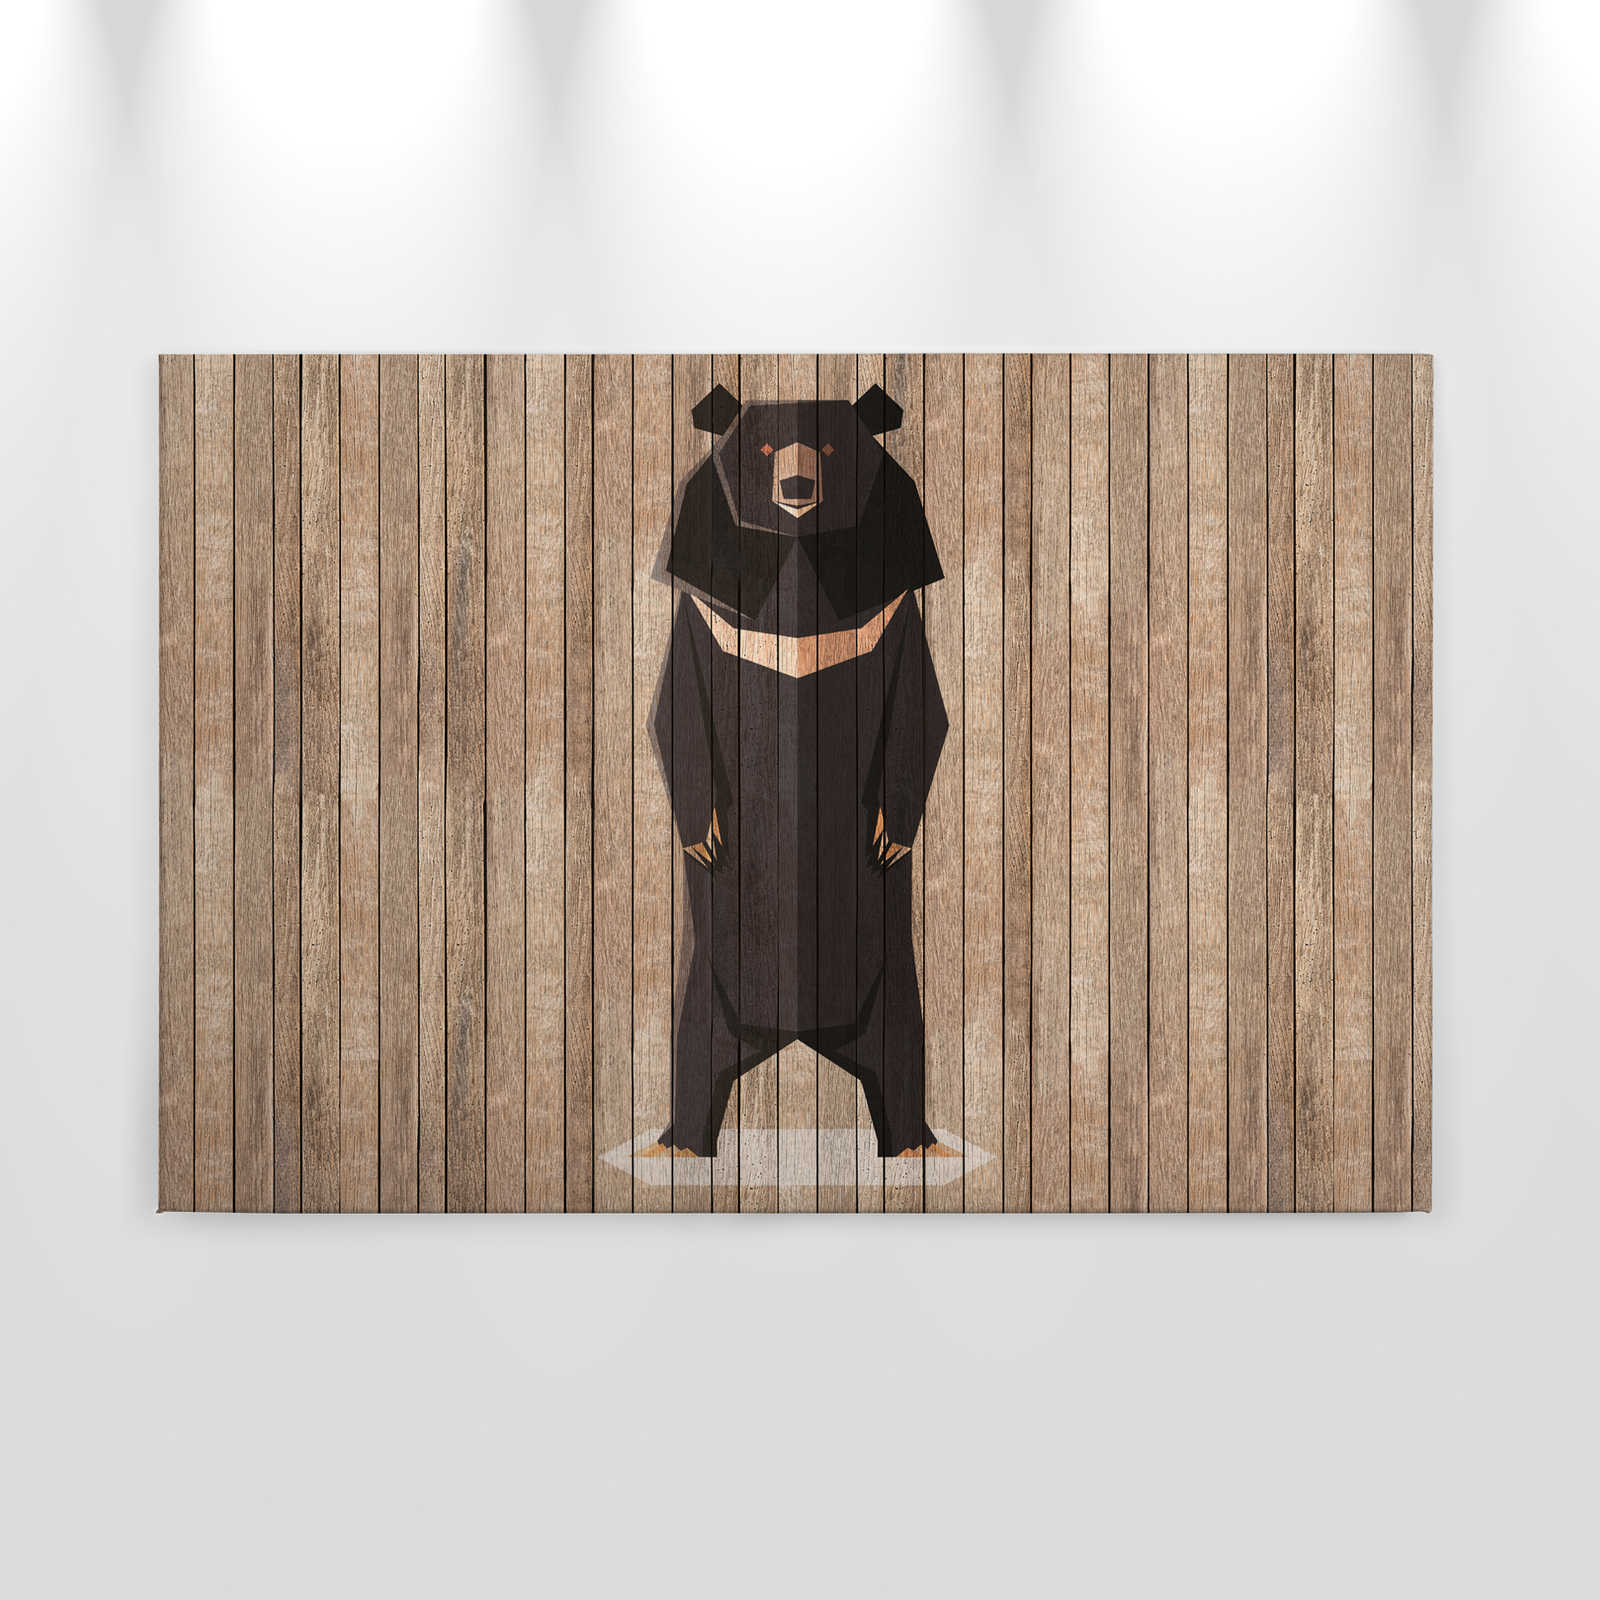             Born to Be Wild 1 - Toile panneau avec ours - Panneaux de bois large - 0,90 m x 0,60 m
        